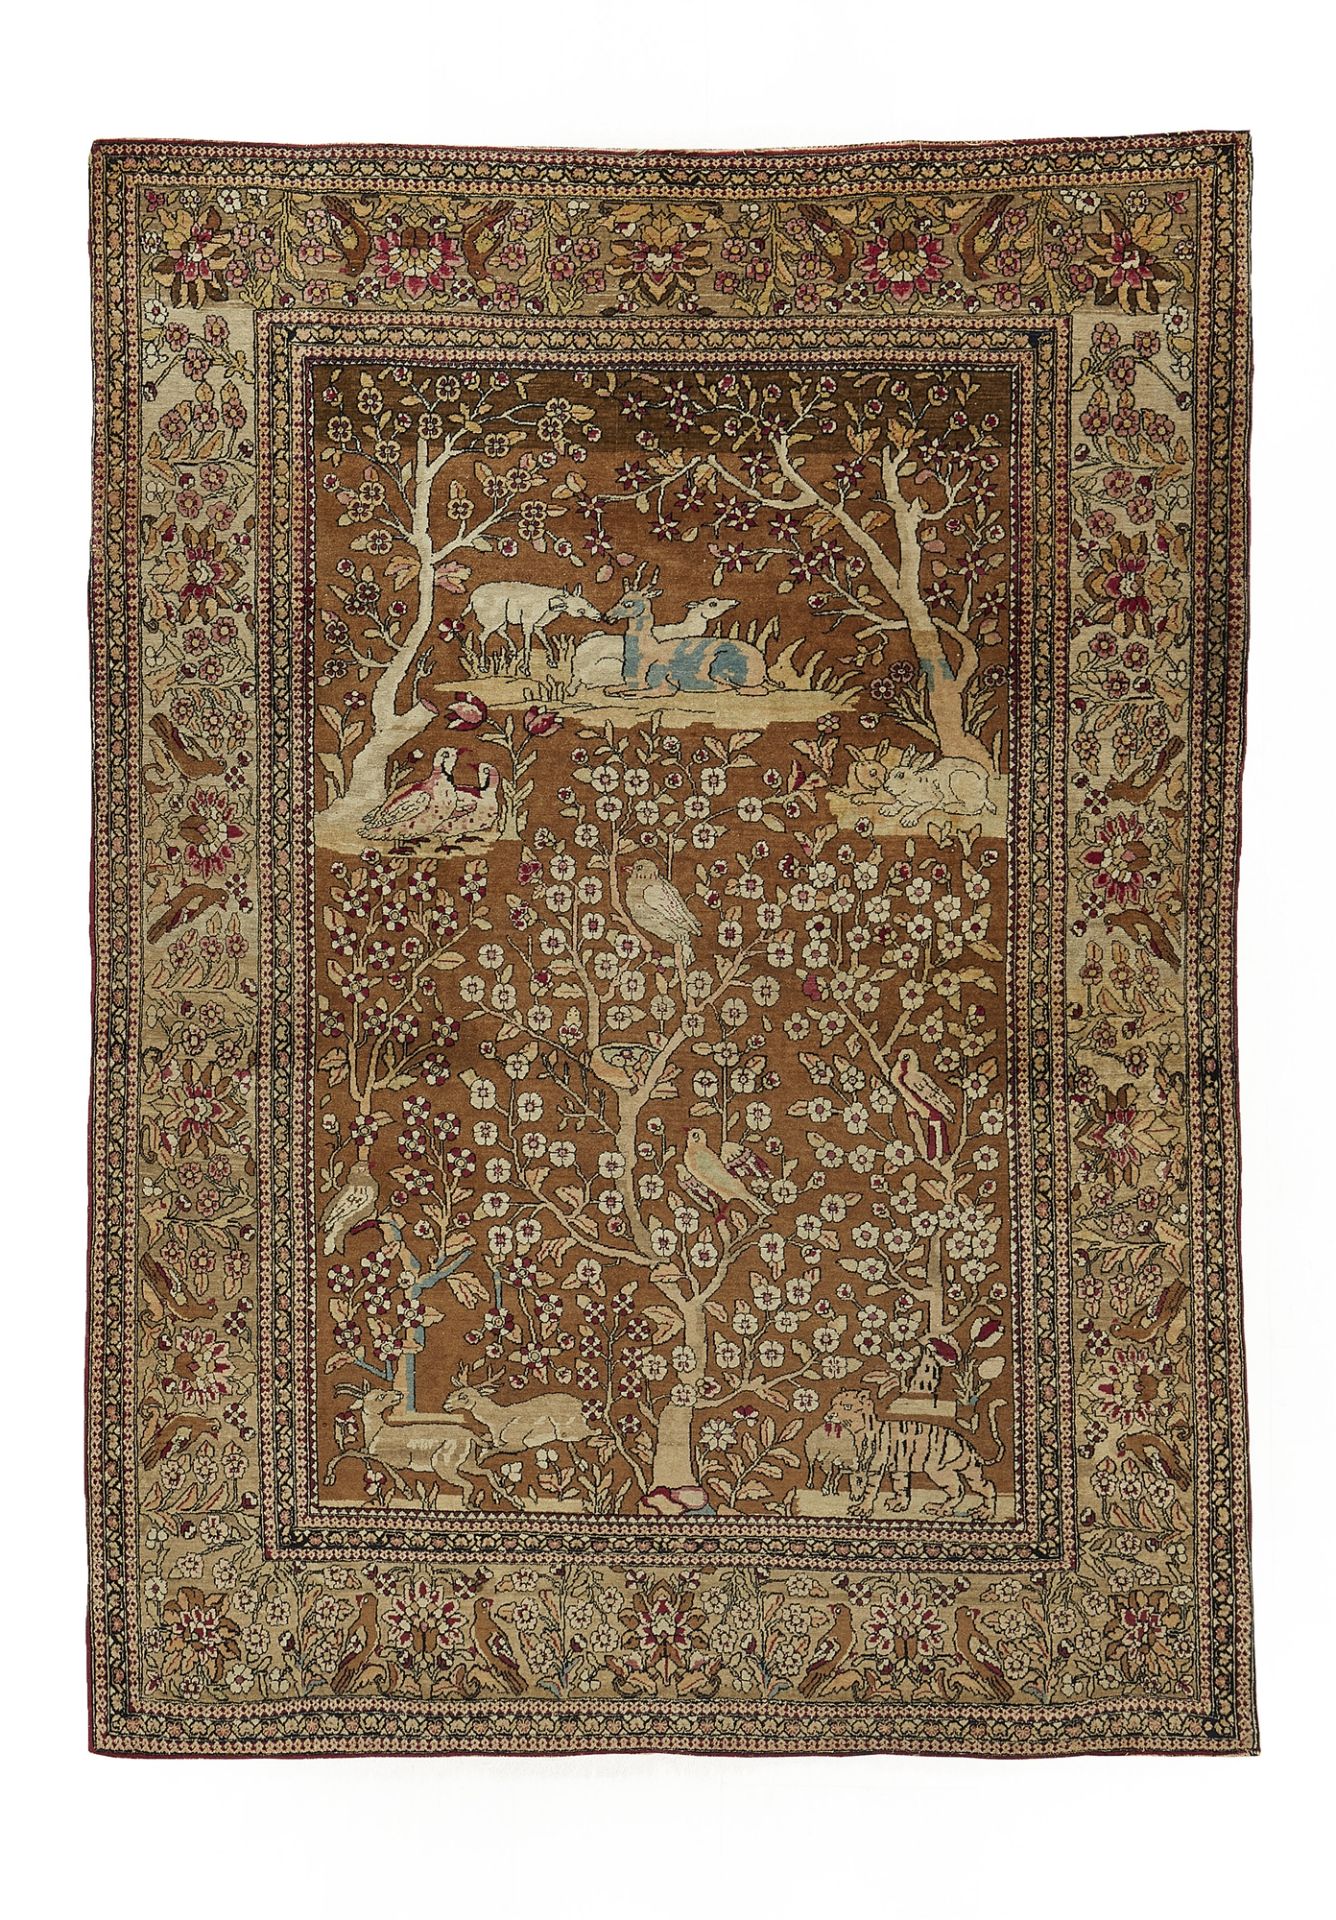 An Iranian hunting rug